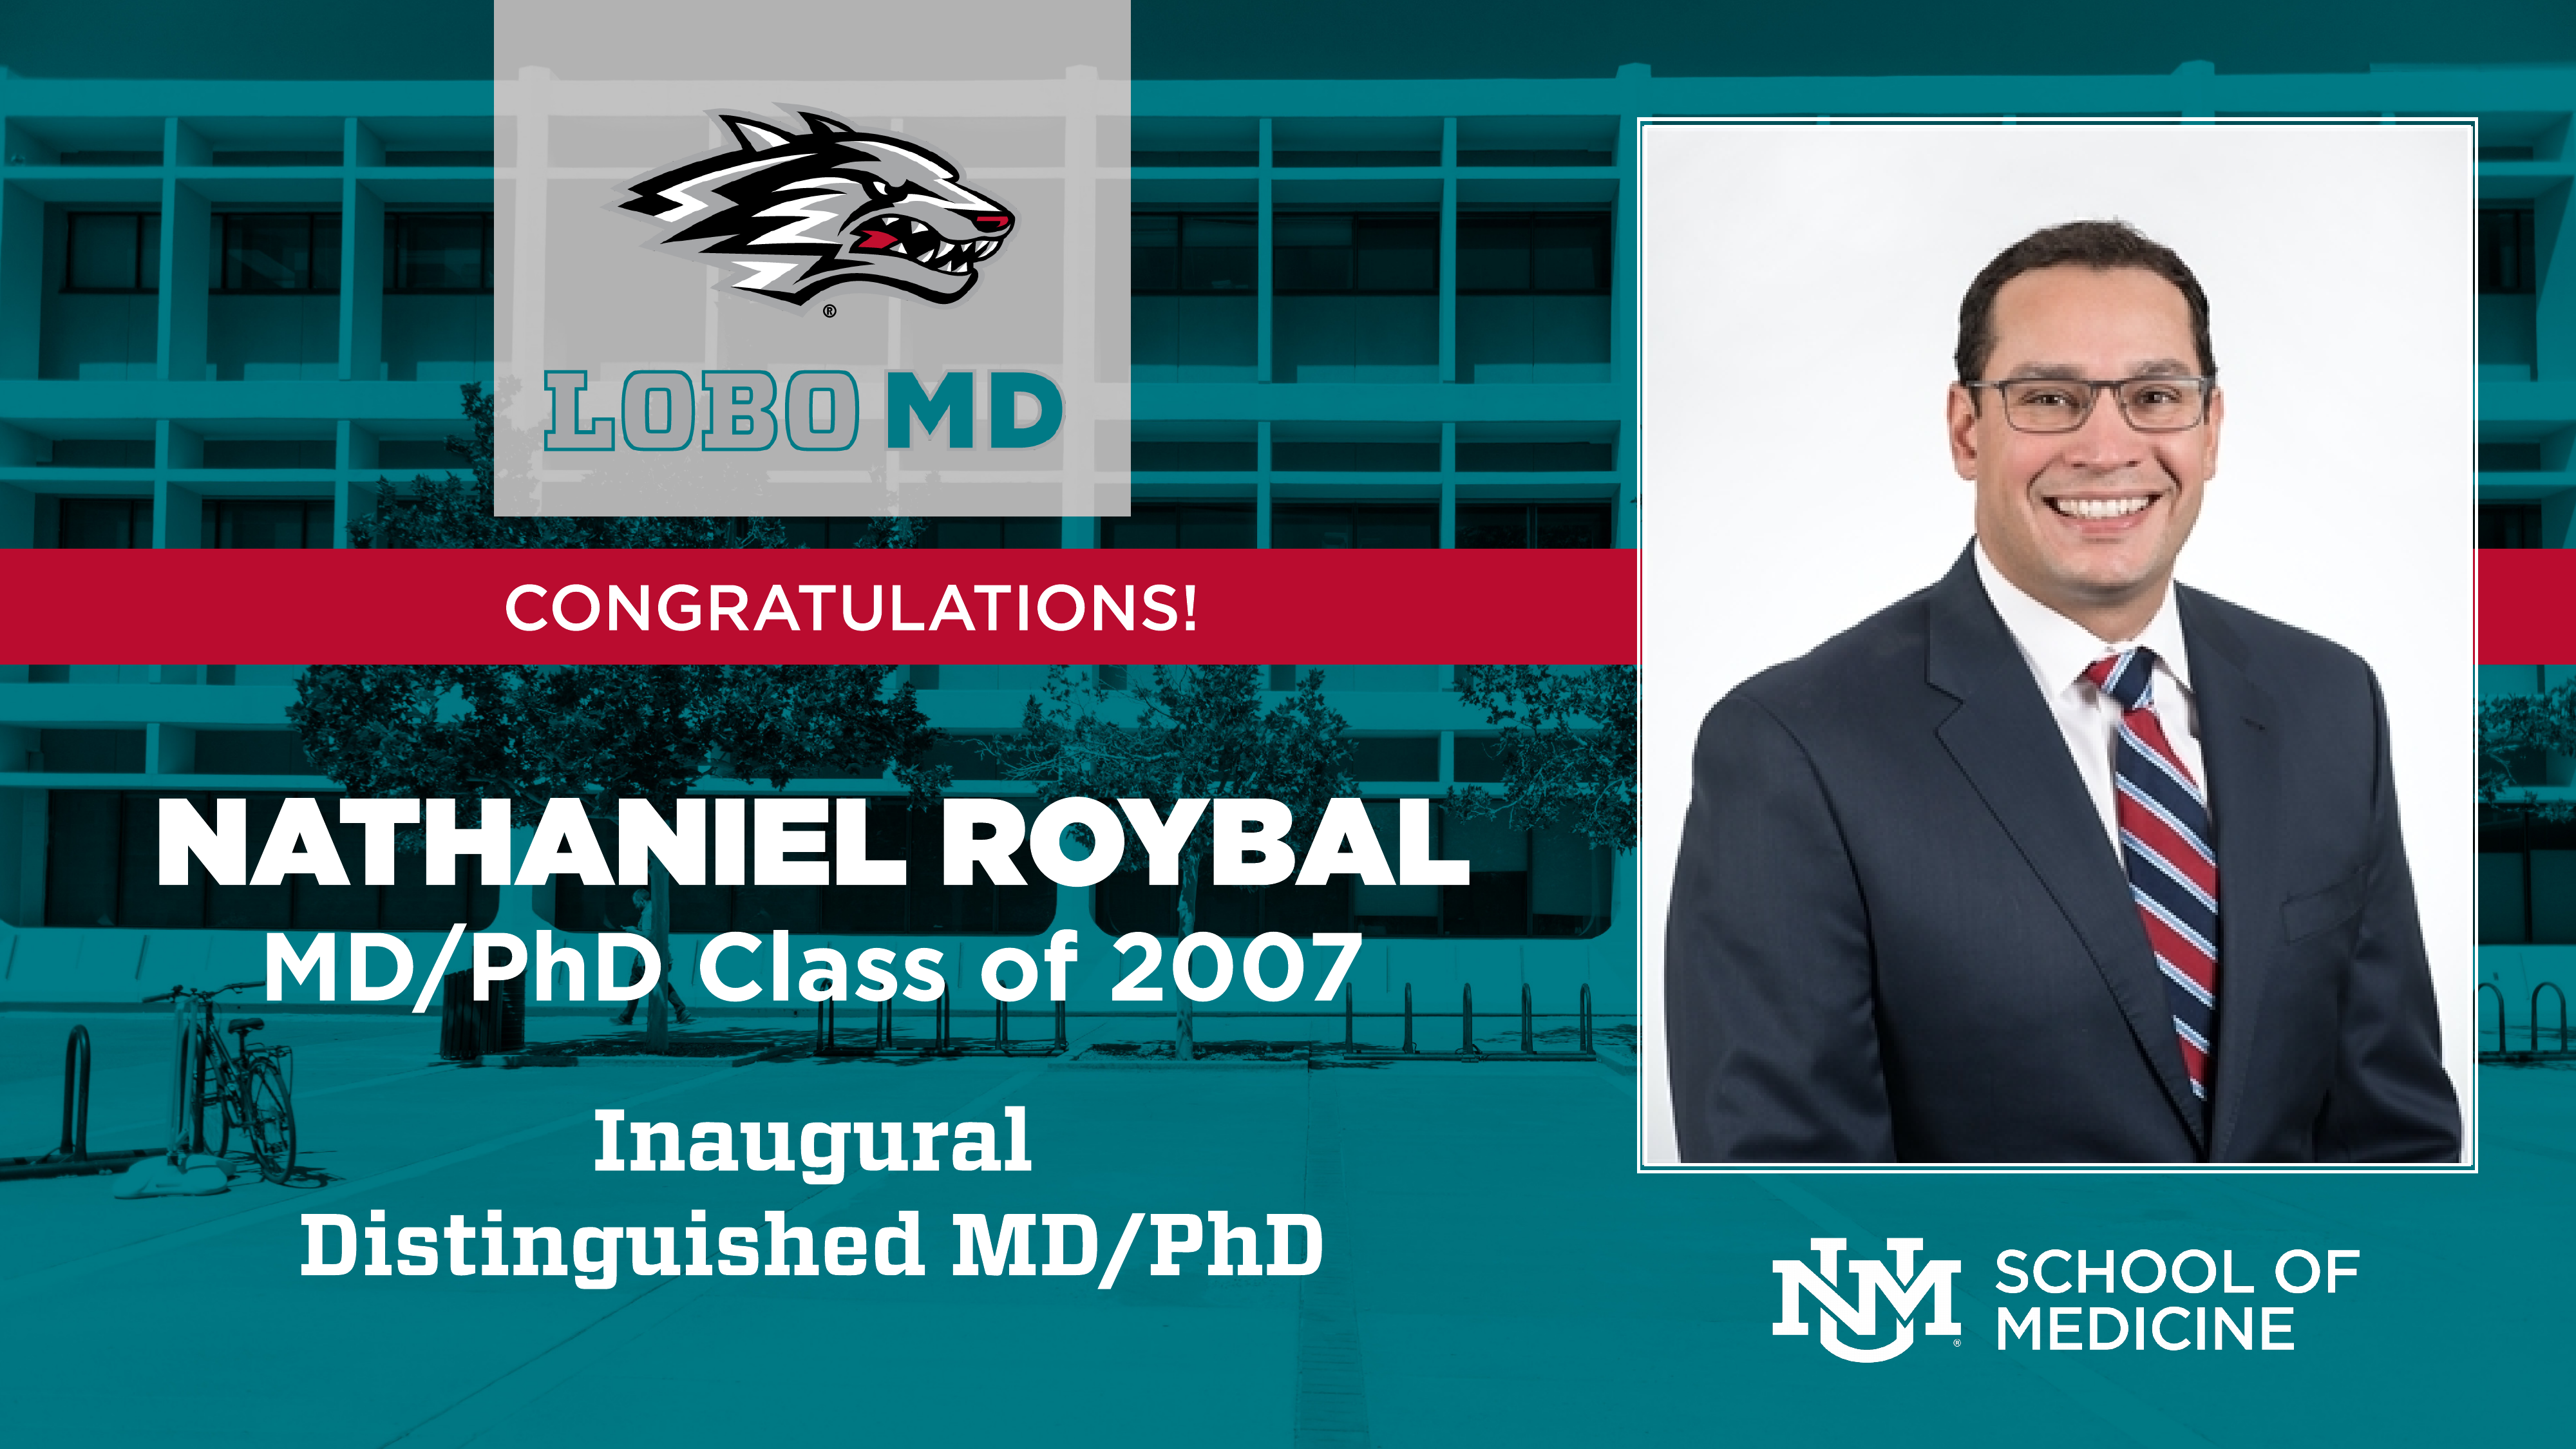 Premio inaugural de MD/PhD Dr. Nathaniel Roybal